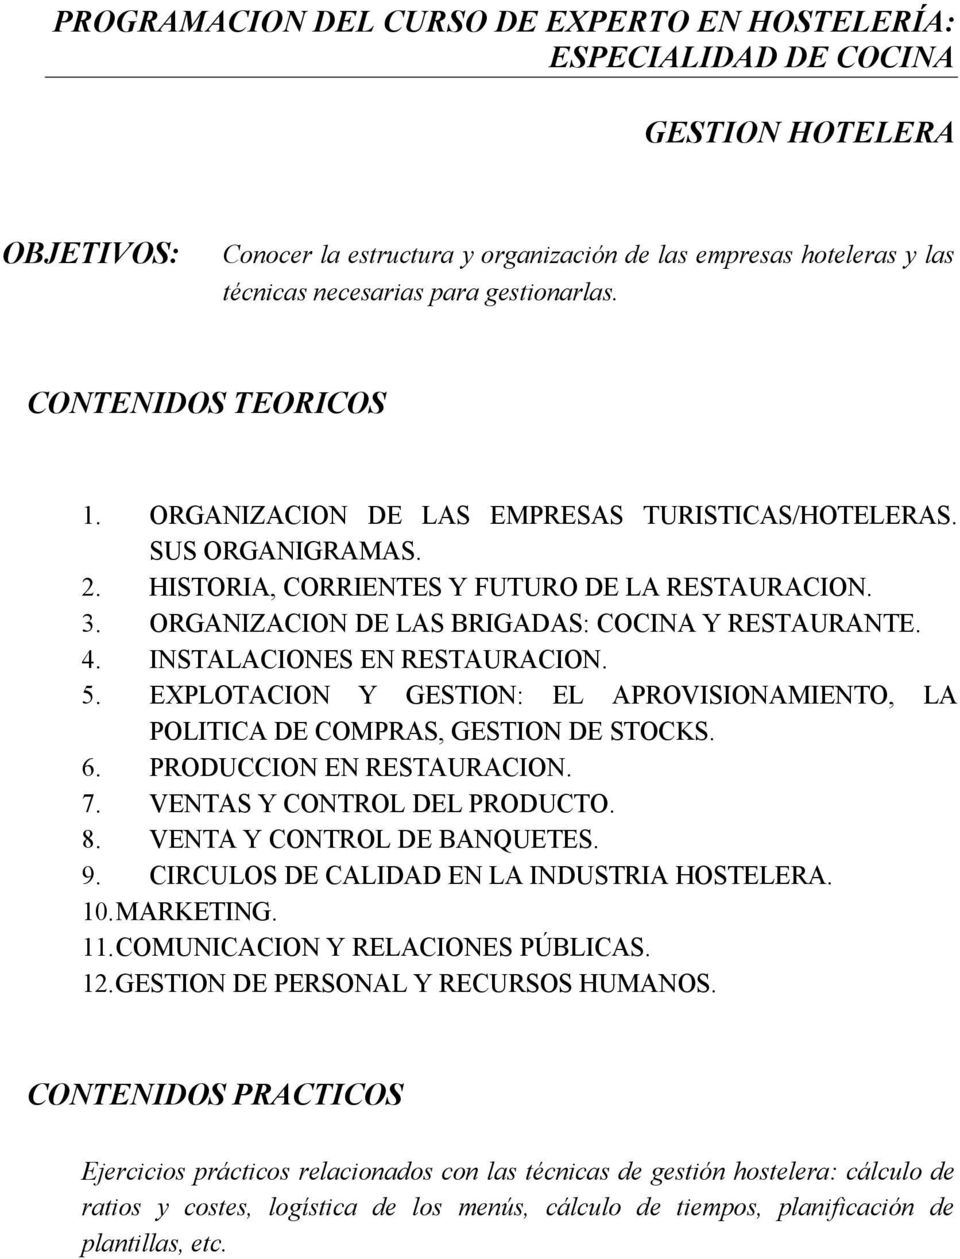 ORGANIZACION DE LAS BRIGADAS: COCINA Y RESTAURANTE. 4. INSTALACIONES EN RESTAURACION. 5. EXPLOTACION Y GESTION: EL APROVISIONAMIENTO, LA POLITICA DE COMPRAS, GESTION DE STOCKS. 6.